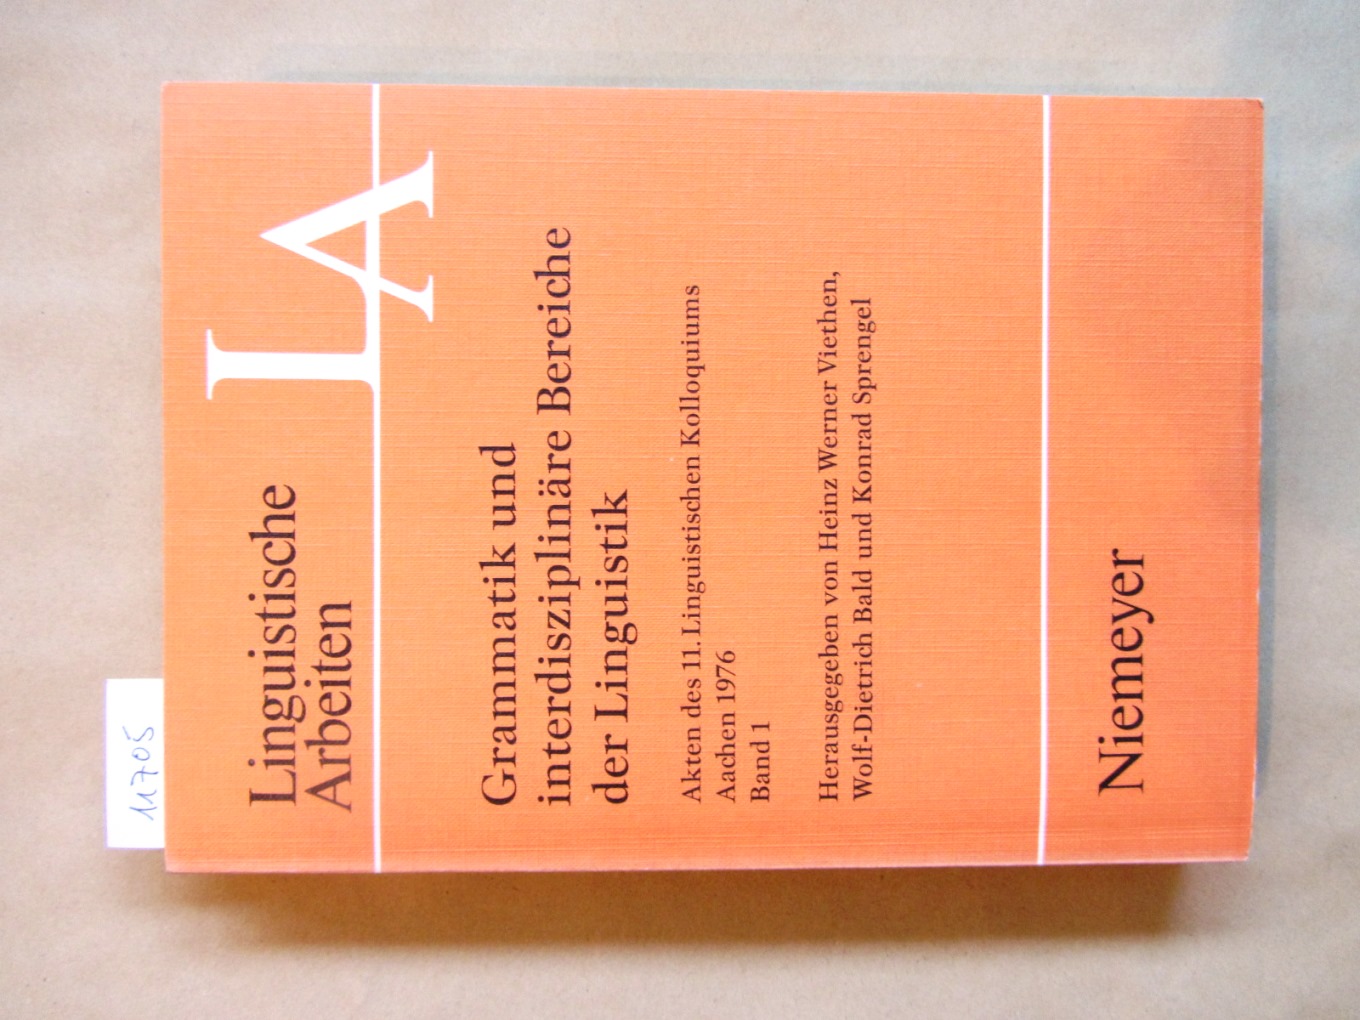 Viethen, Heinz Werner et al. (Hrsg.):  Grammatik interdisziplinäre Bereiche der Linguistik. Akten des 11. Linguistischen Kolloquiums, Aachen 1976, Band 1 apart. ("Linguistische Arbeiten", 49) 